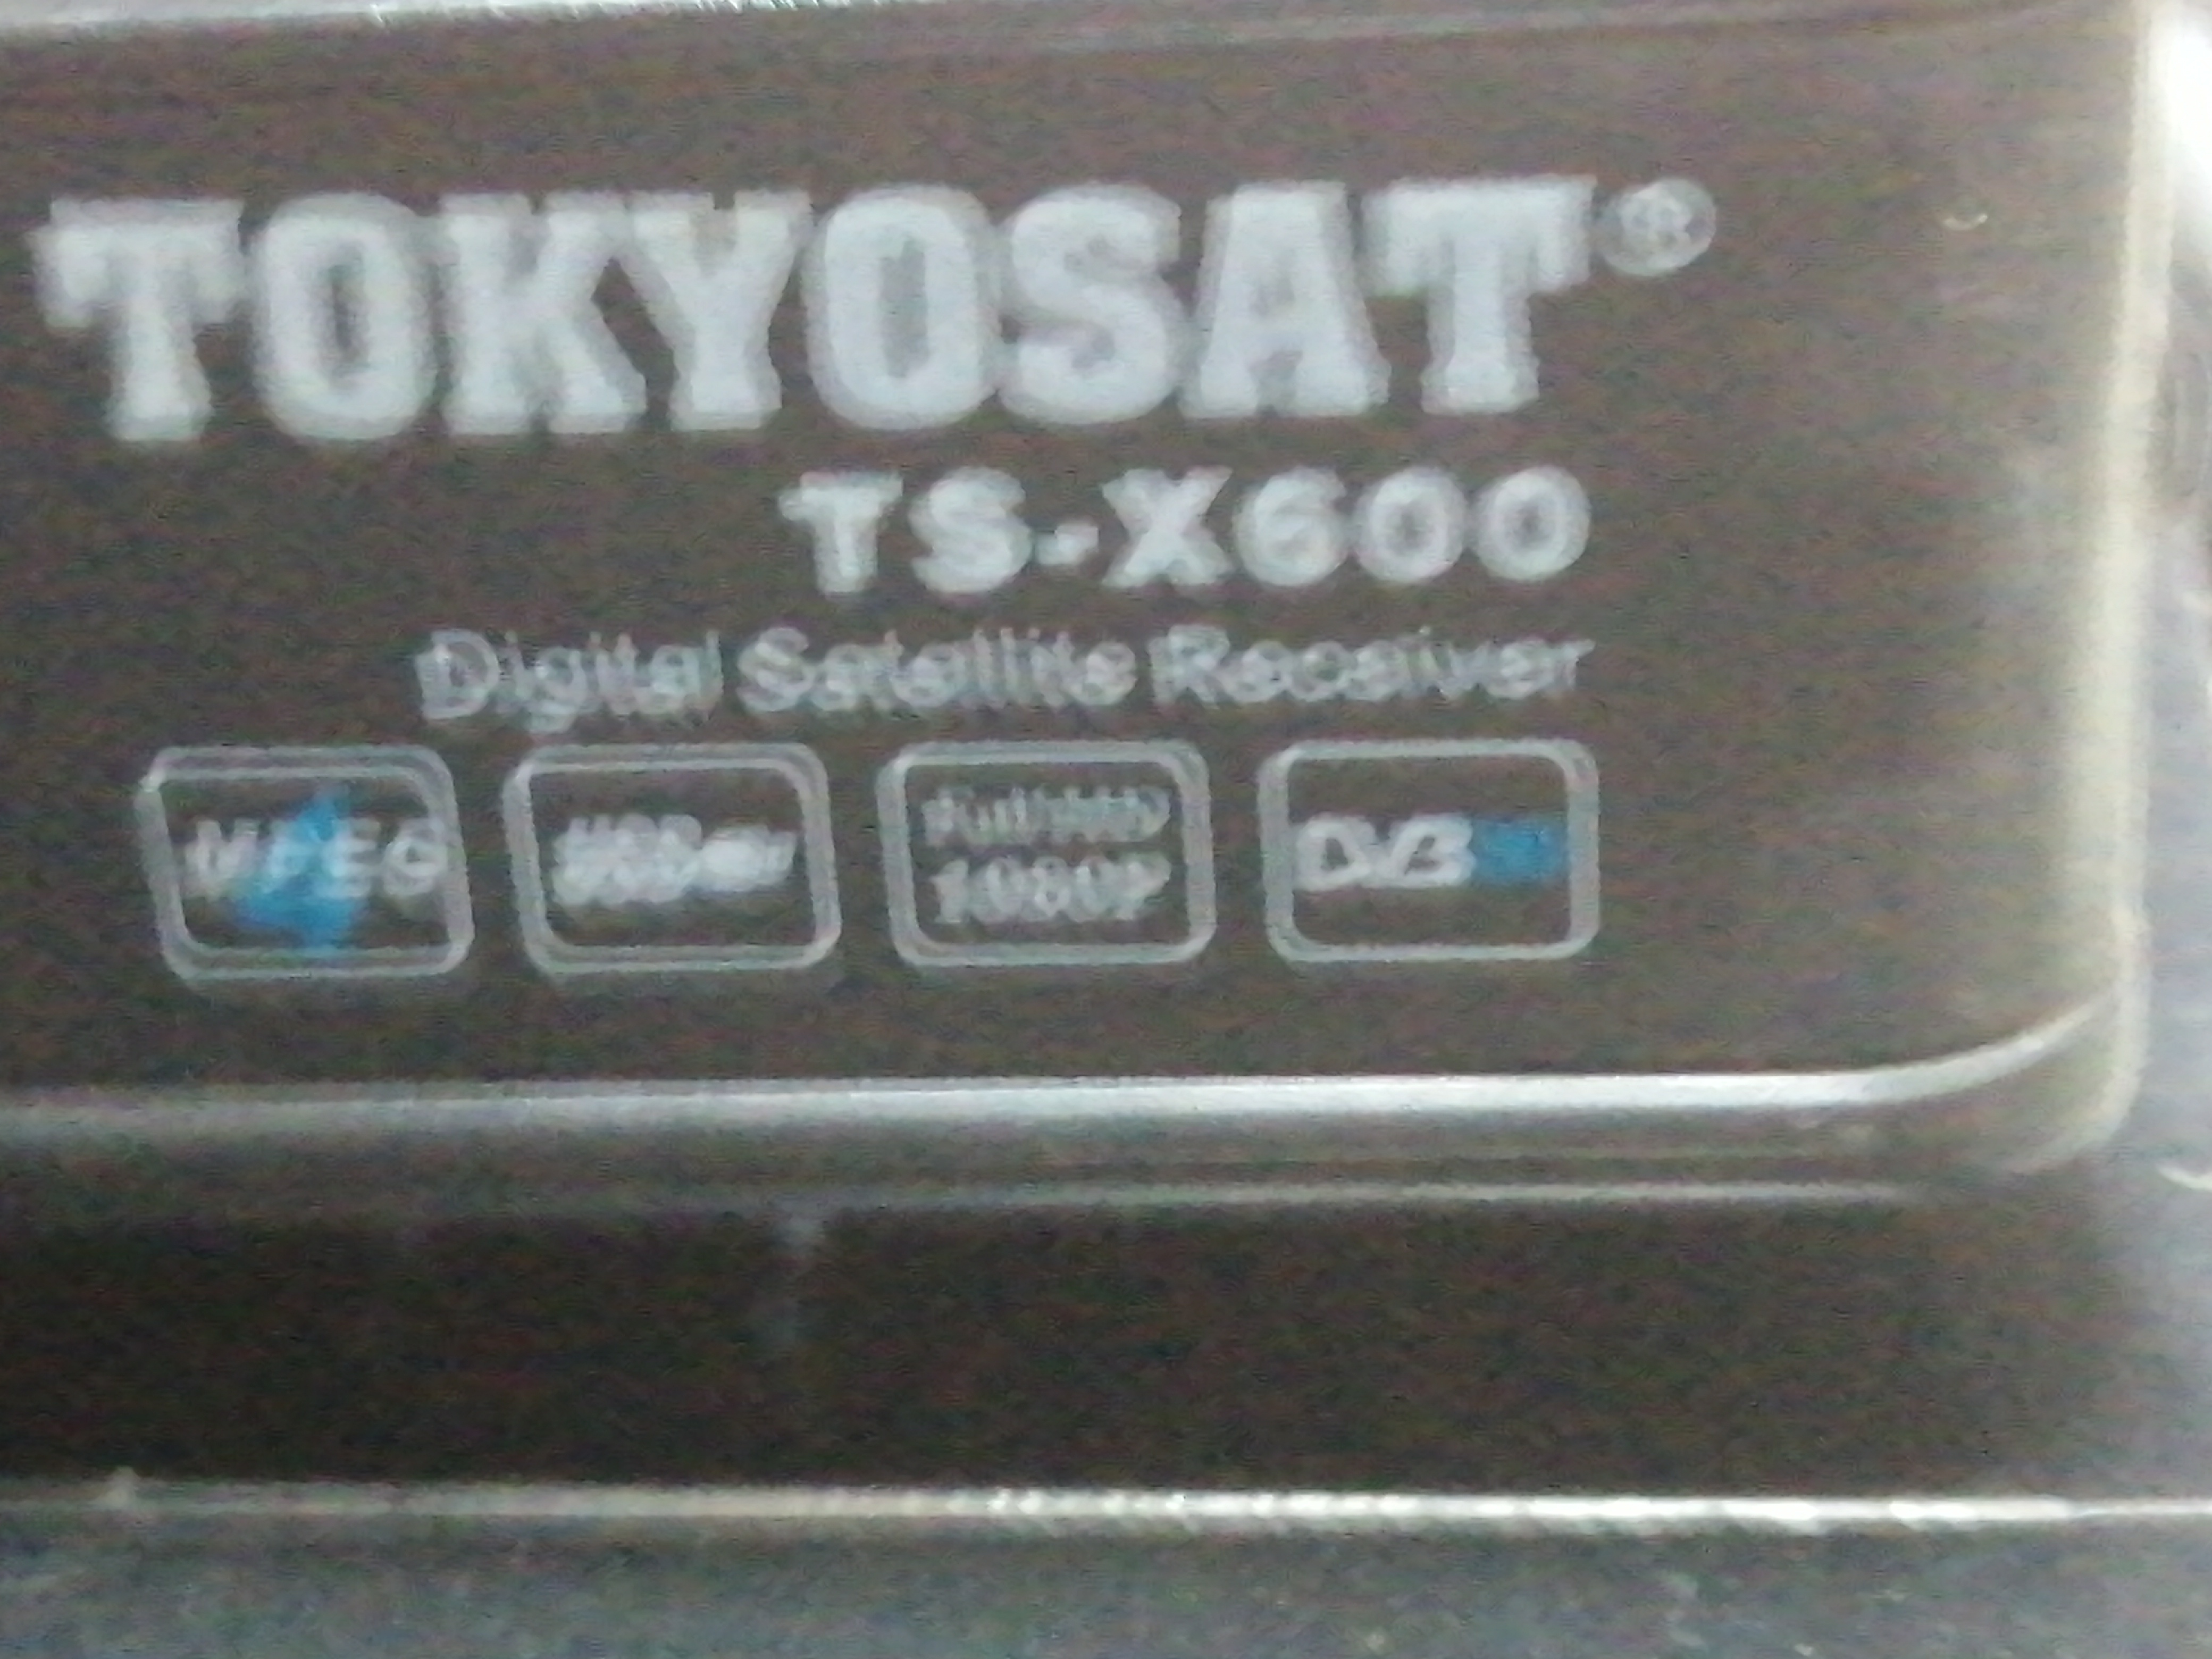 فلاشة TOKYOSAT TS-X600 3